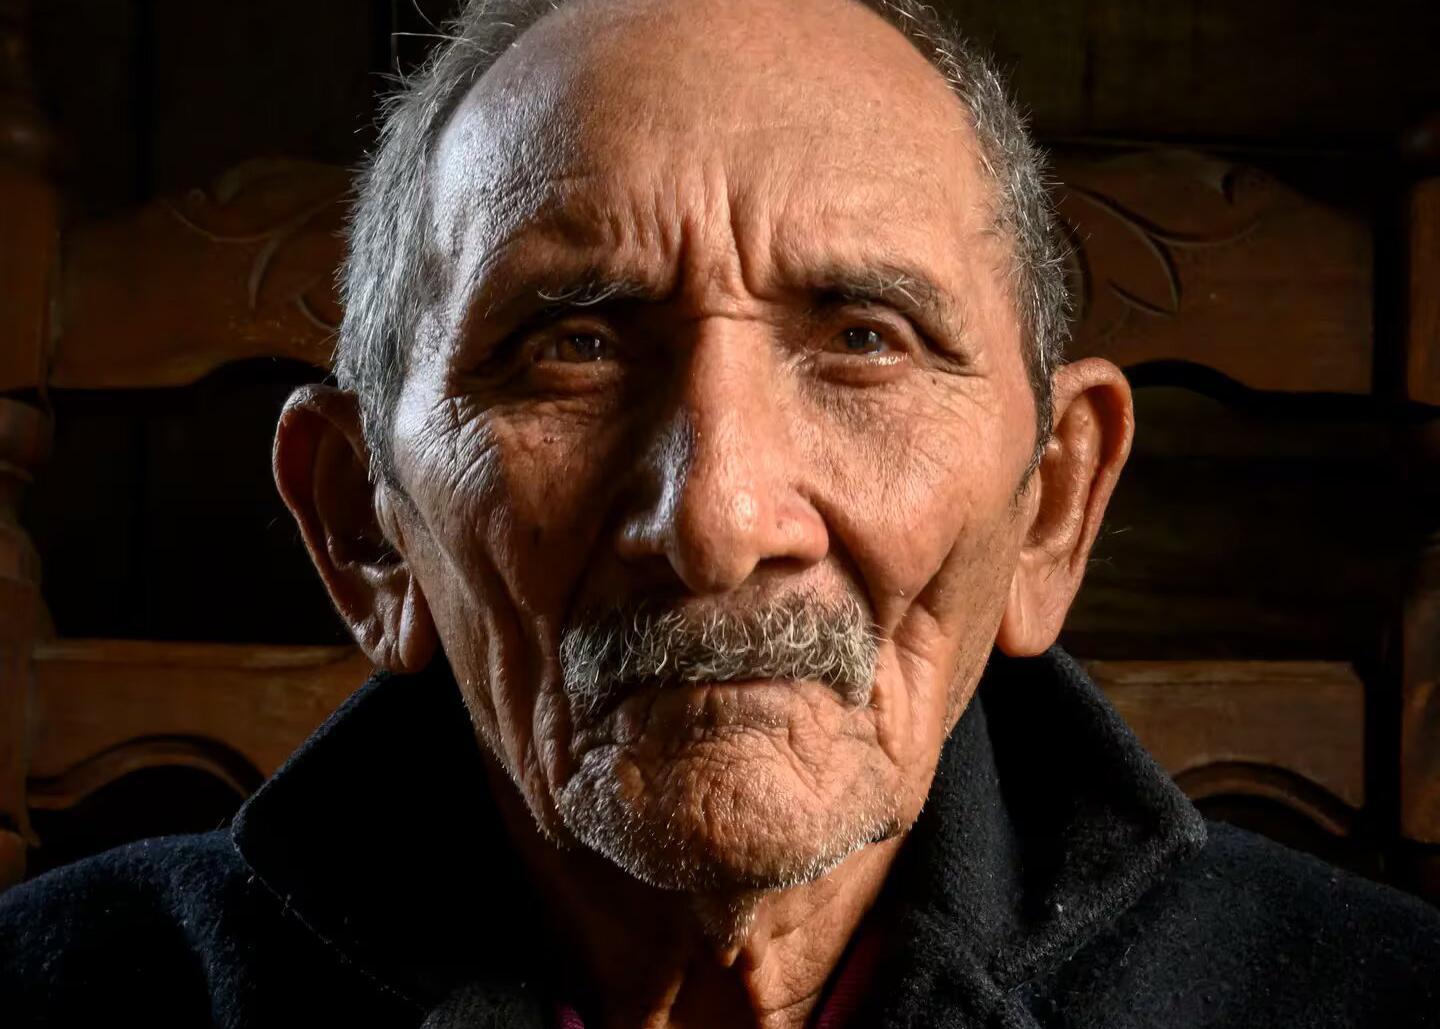 Image de Francisco Ramírez, cubain avec le plus haut pourcentage de gènes amérindiens dans son ADN